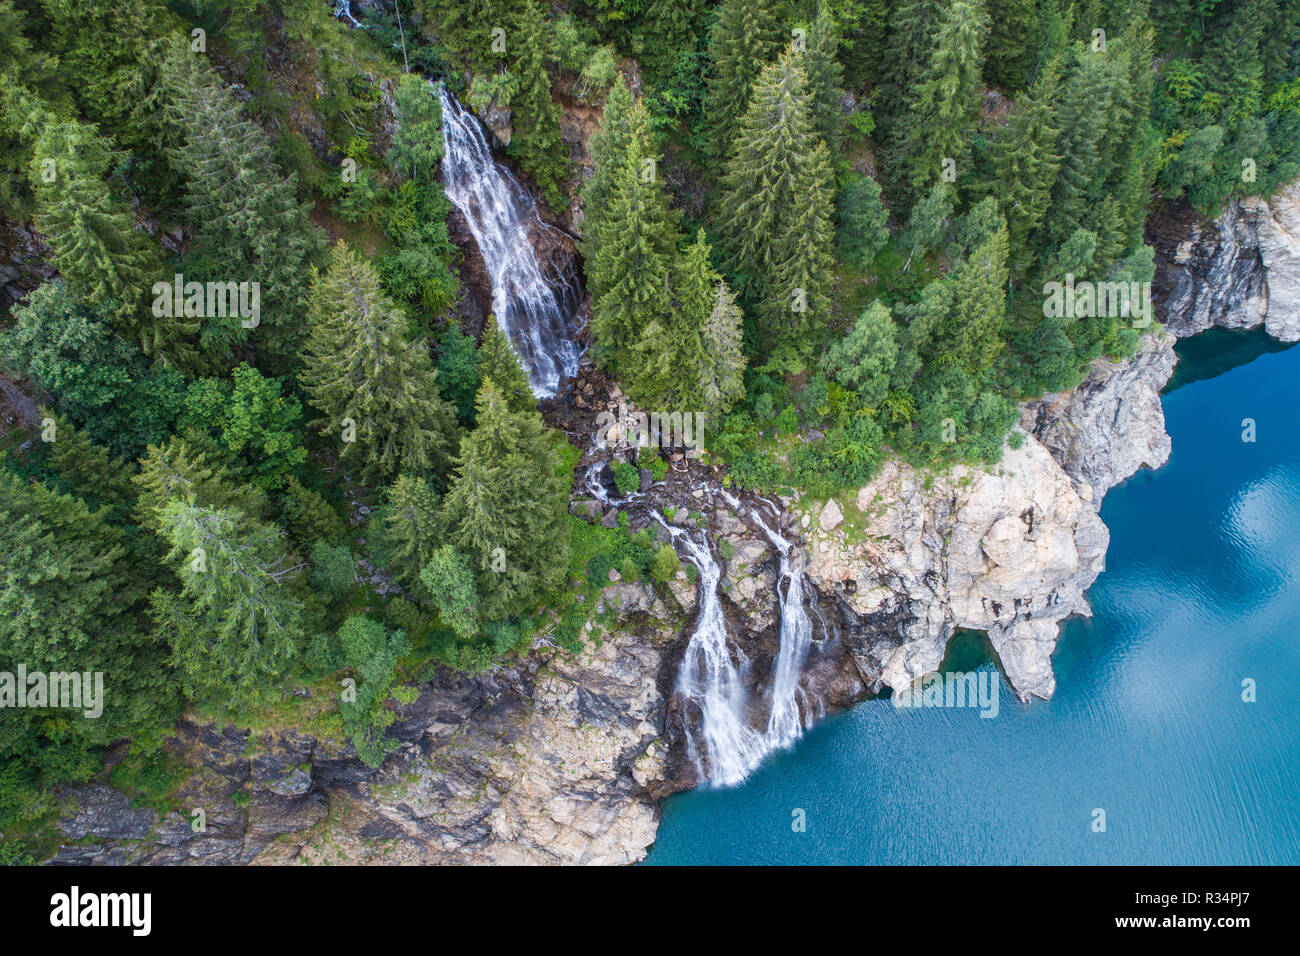 Cascata in una foresta e lago alpino. Foto aerea Foto Stock